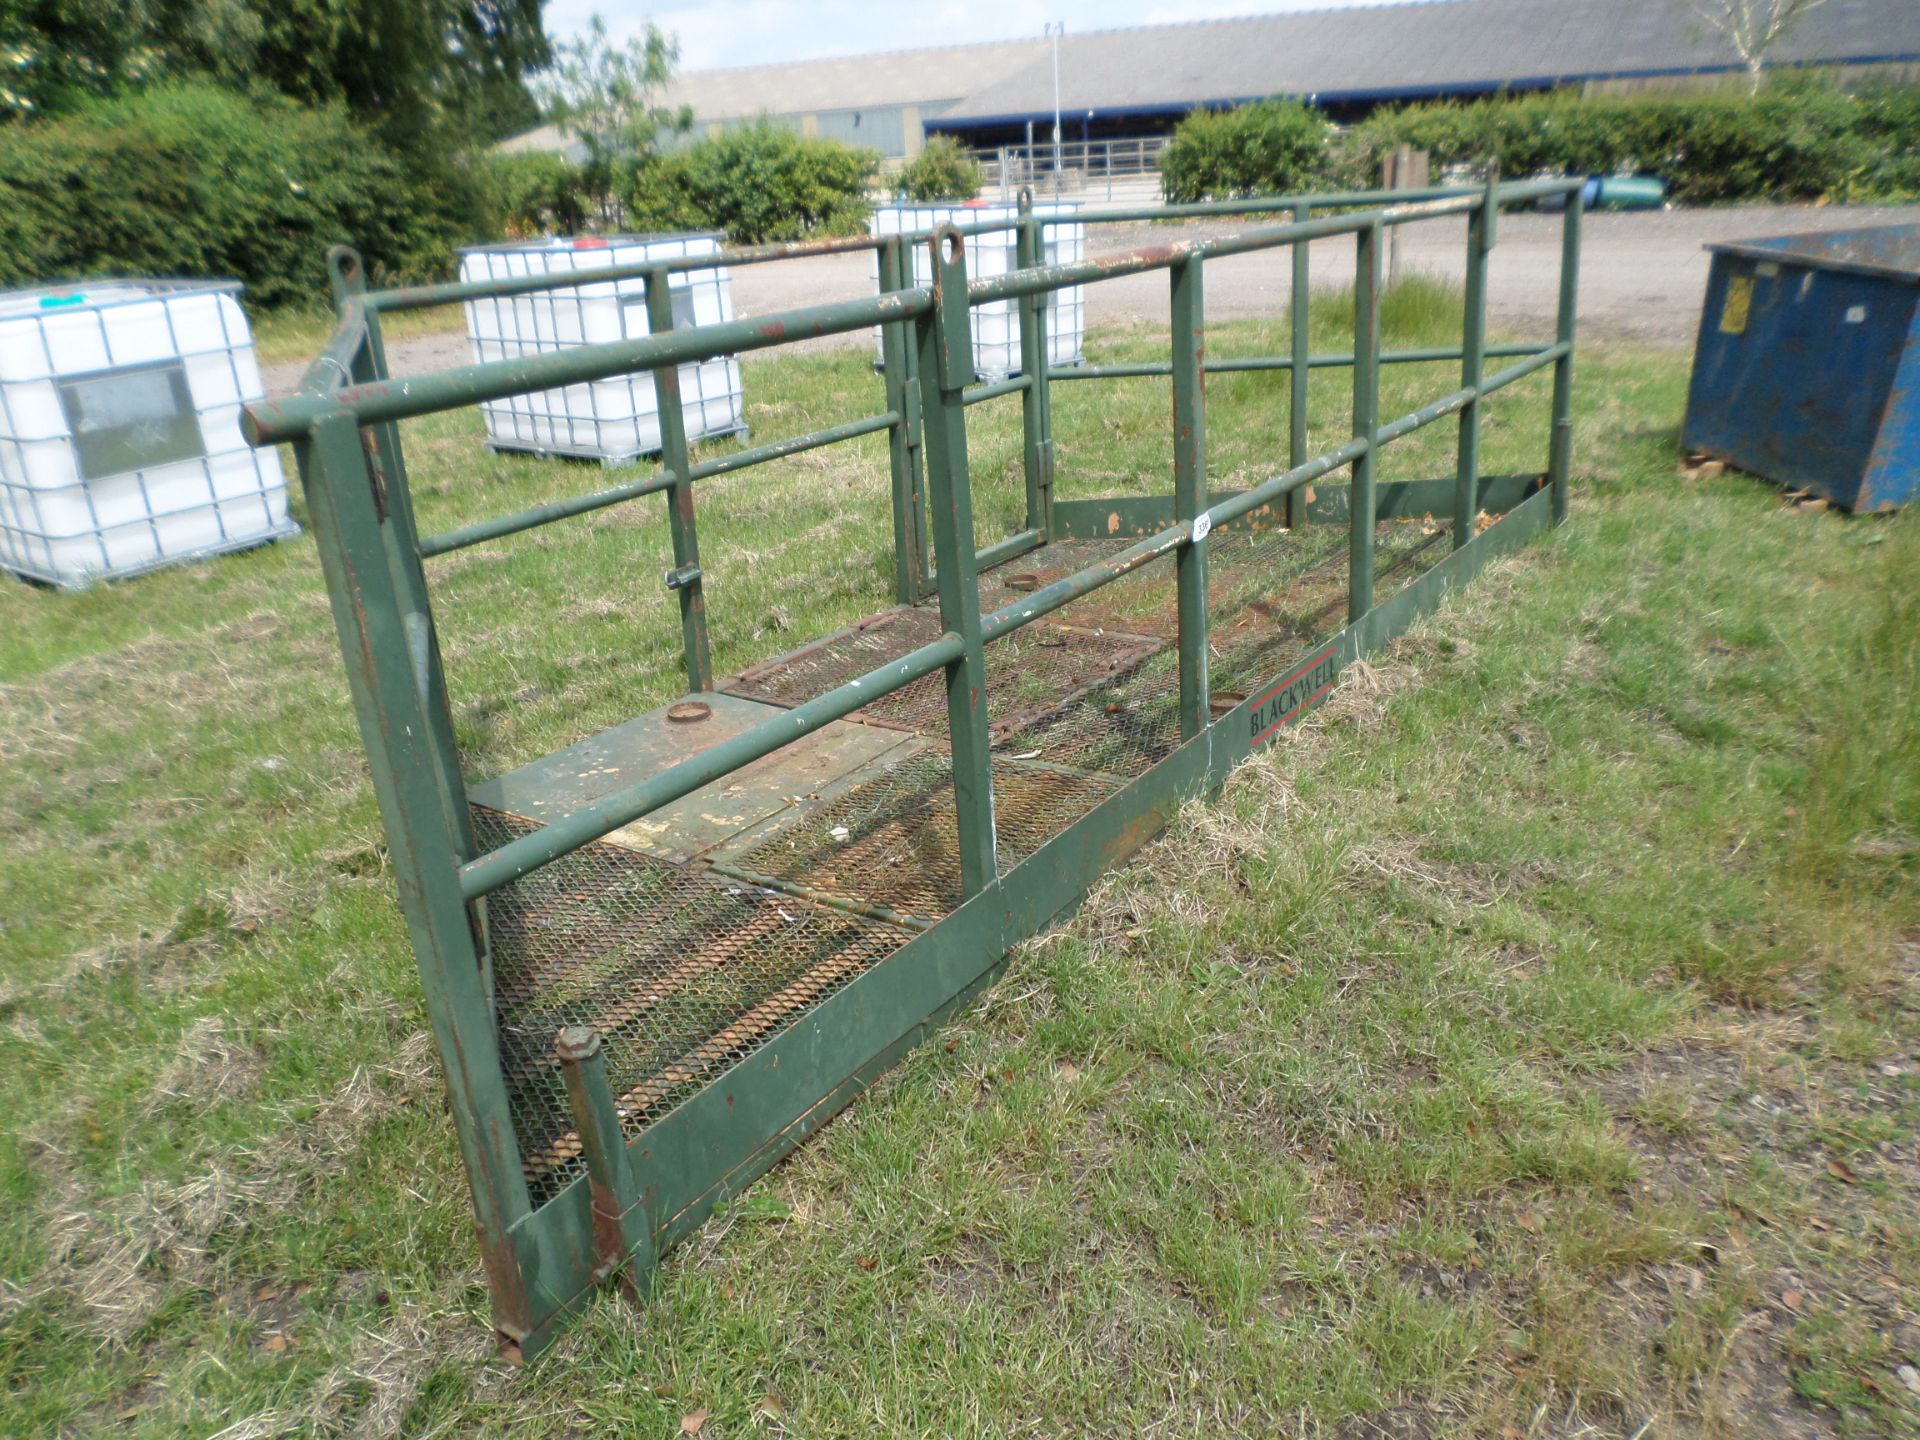 Man platform cage for forklift, not tested